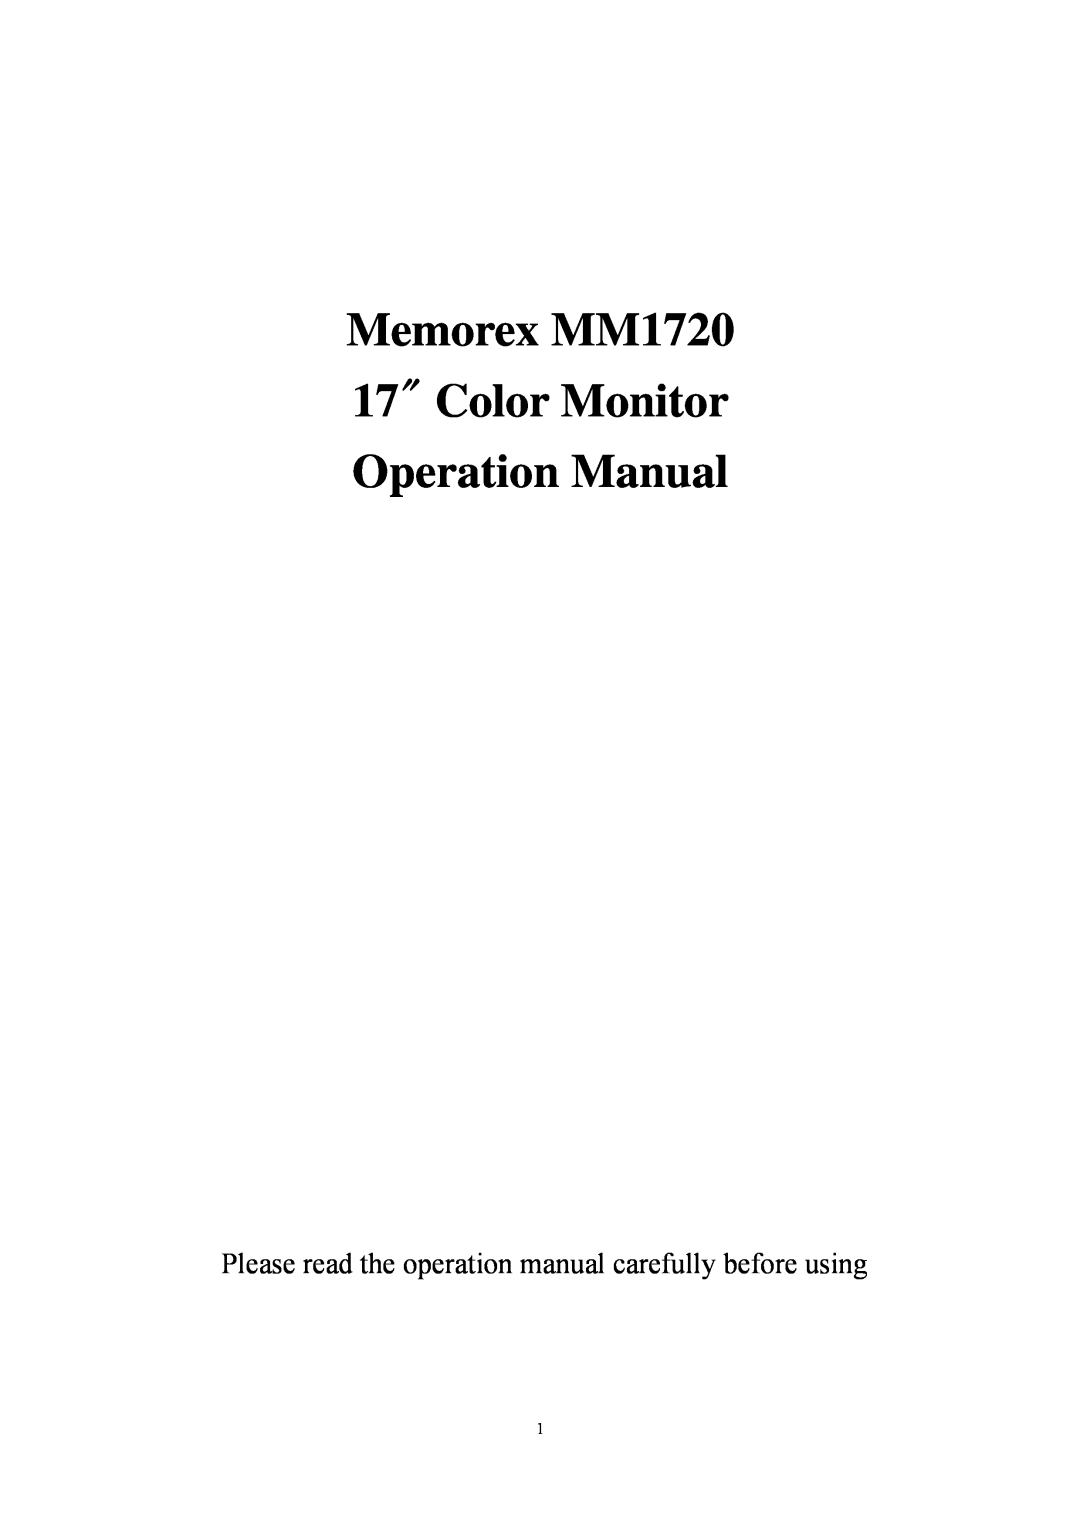 Memorex operation manual Memorex MM1720 17 Color Monitor Operation Manual 